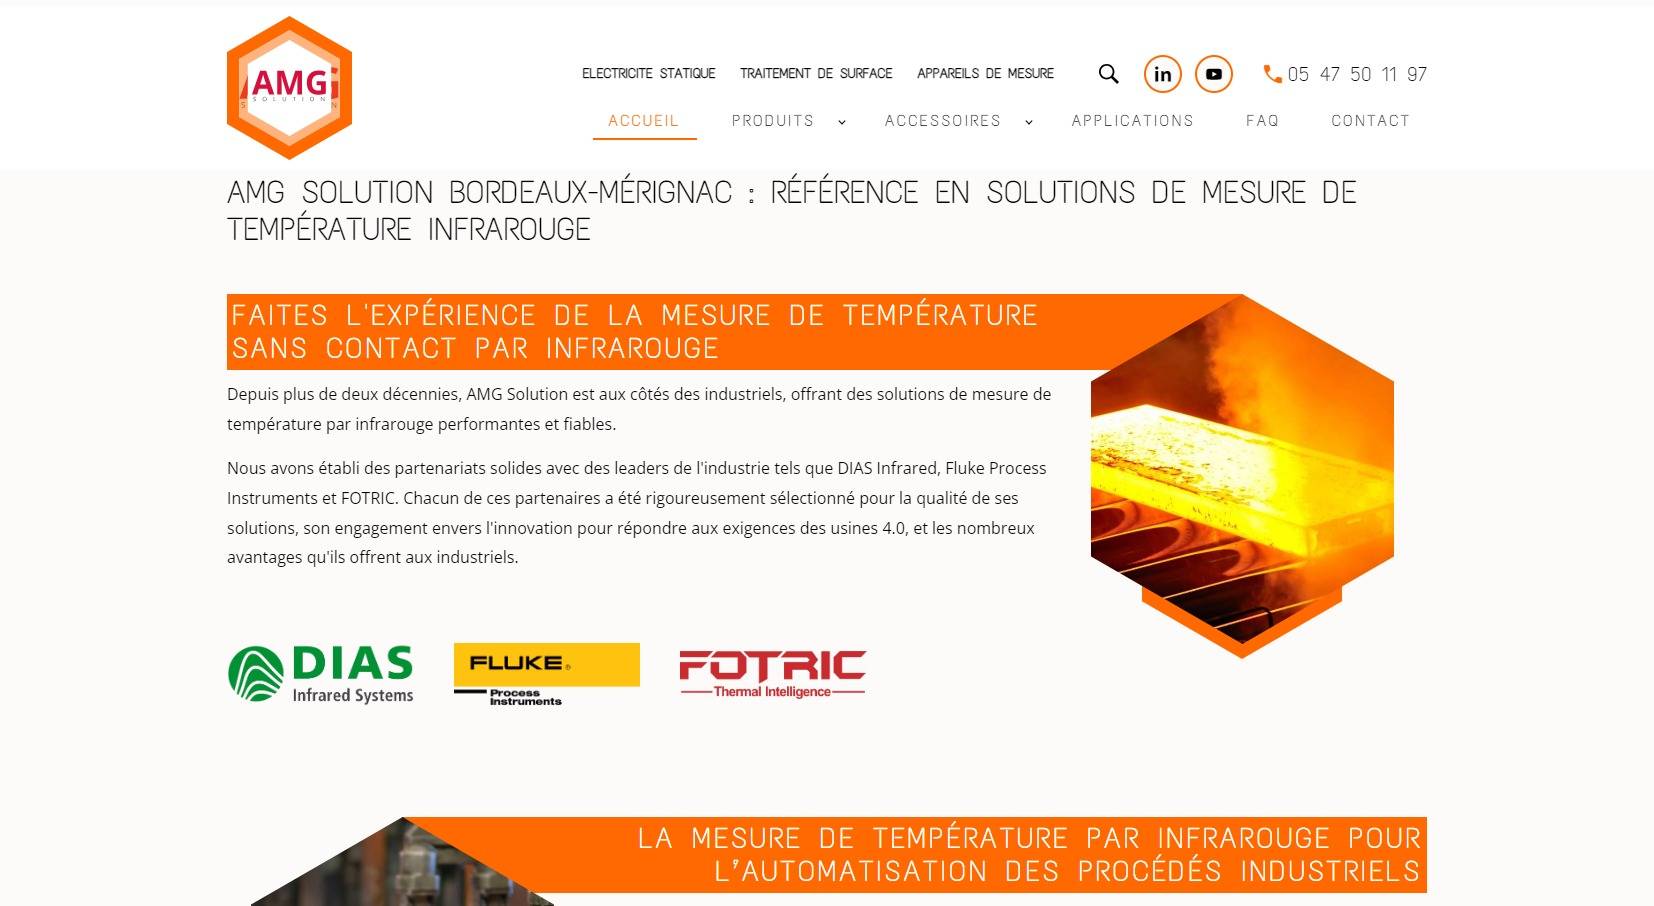 Fournisseur en solutions de mesure de température infrarouge basé à Mérignac - AMG solution